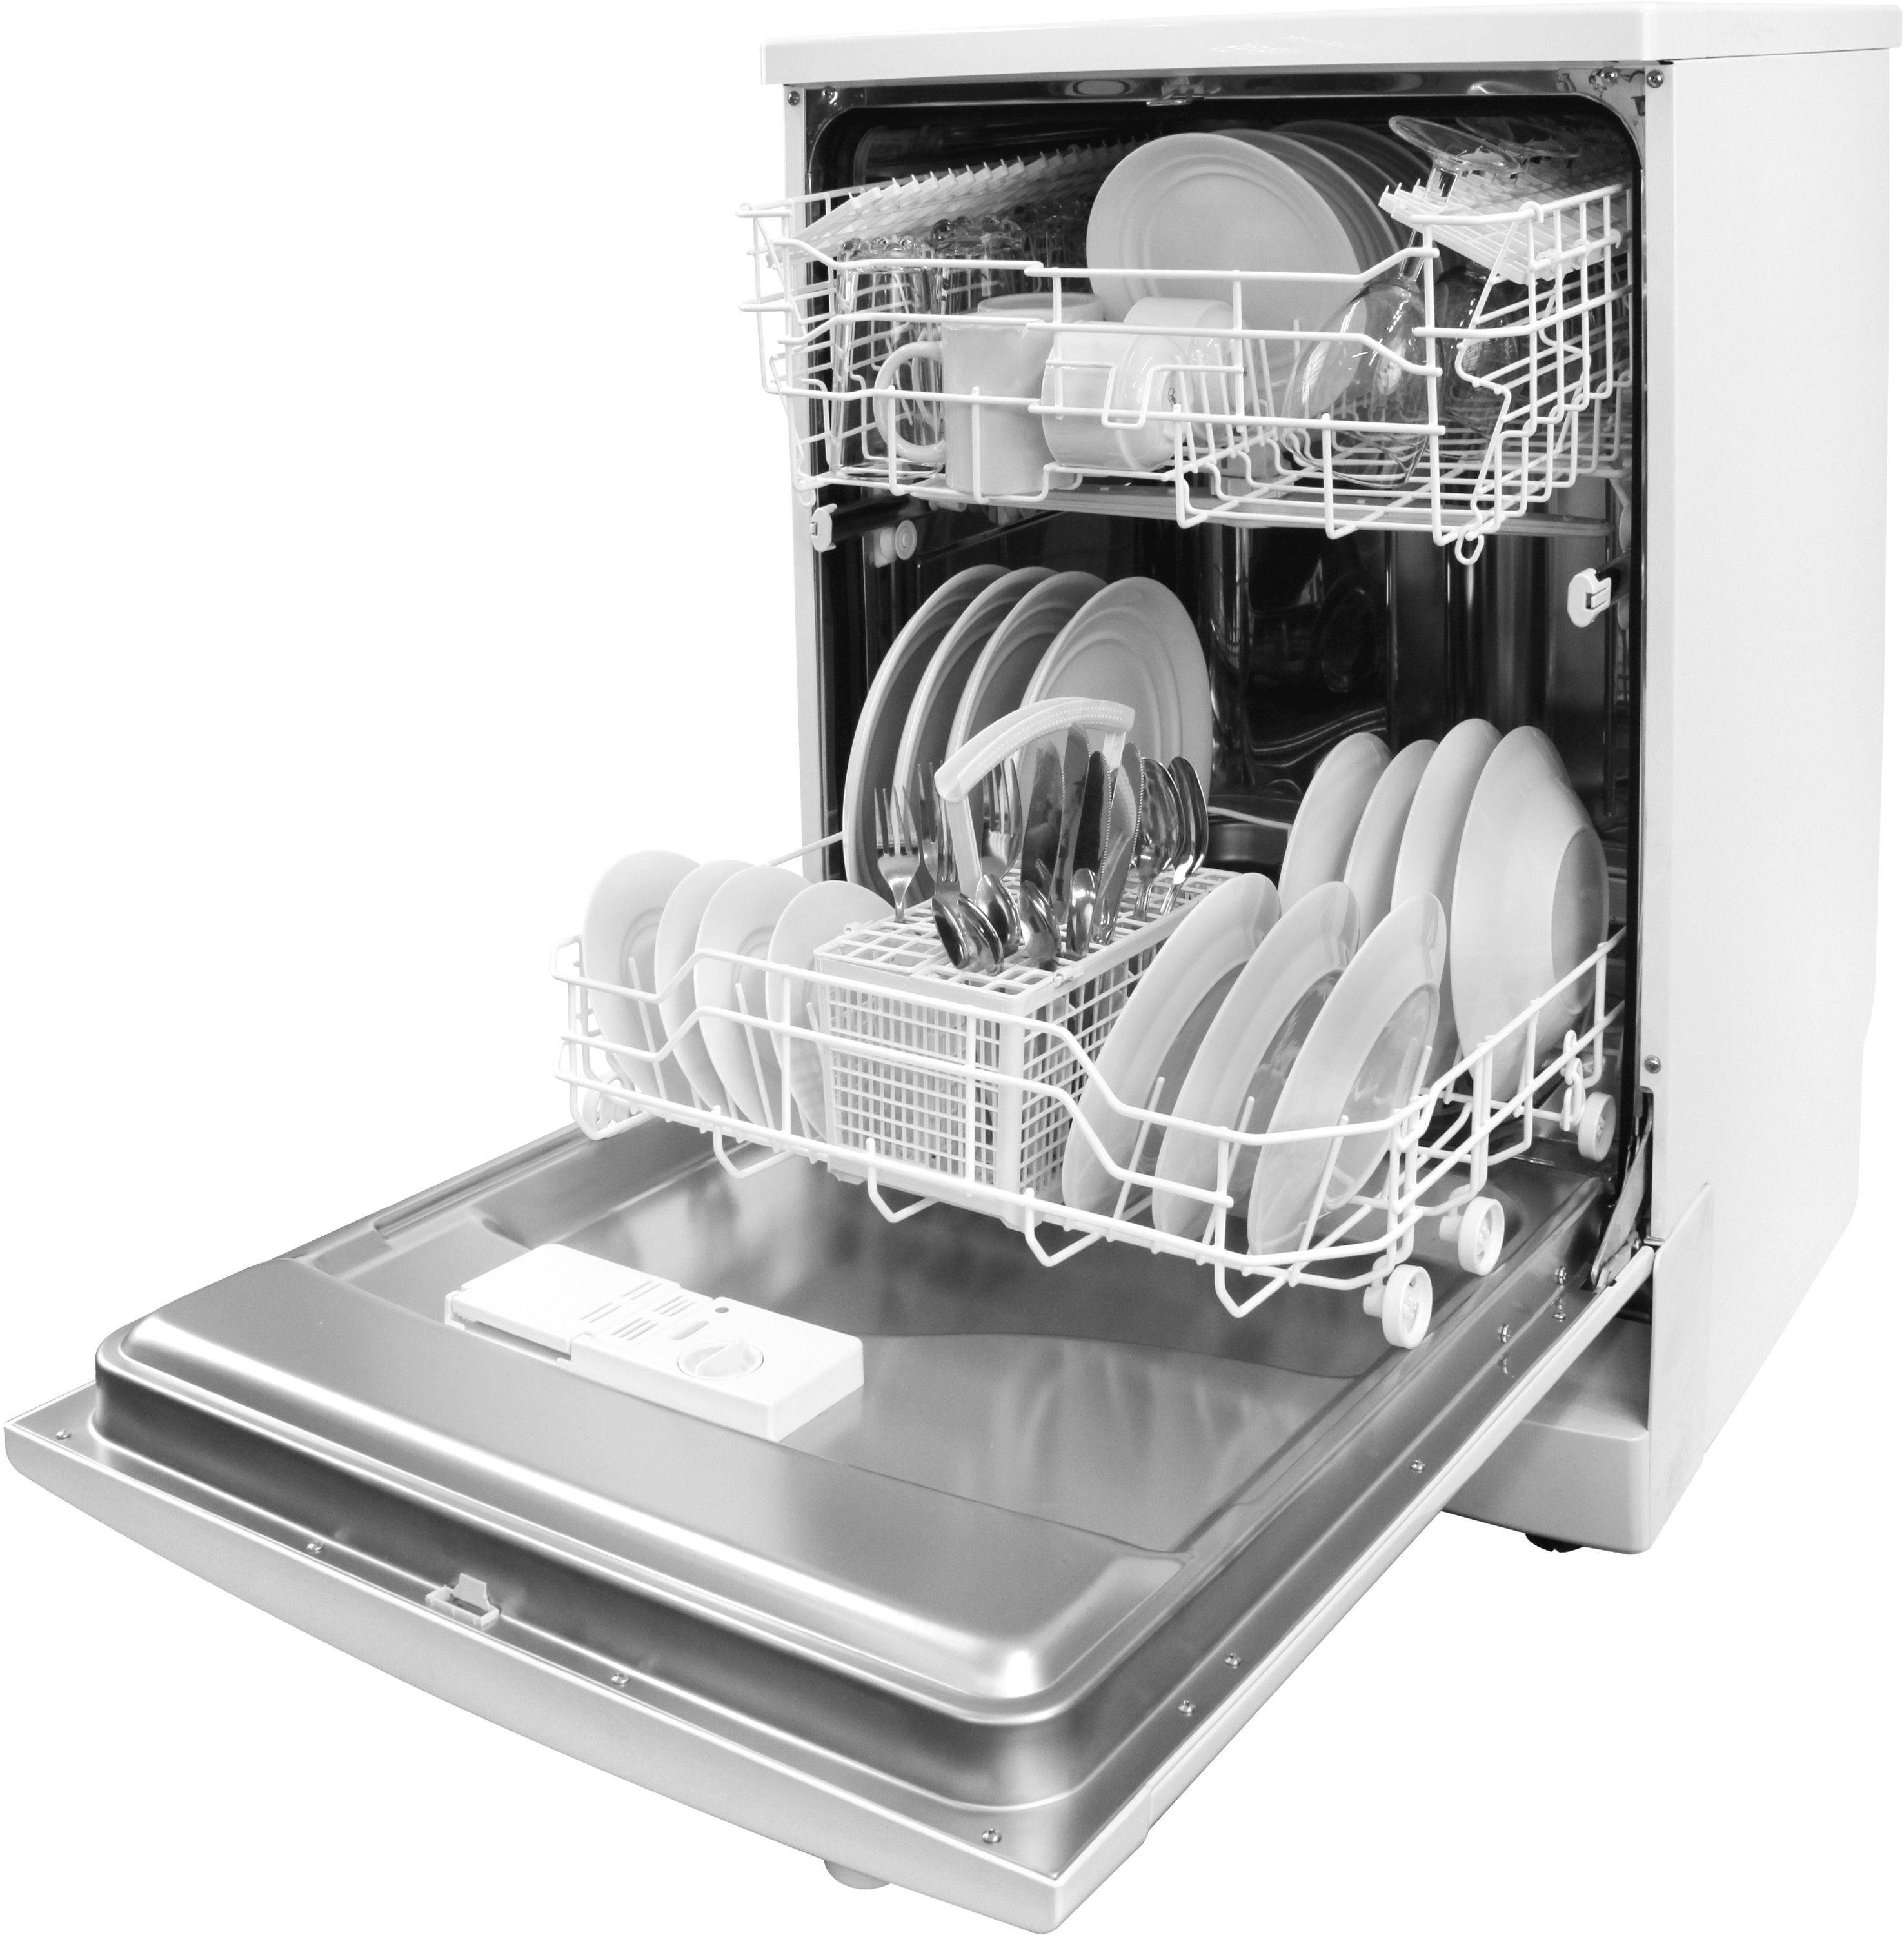 Первый пуск посудомоечной машины. Посудомоечная машина Electrolux ESF 43020. Посудомоечная машина Whirlpool ikea 2006. Electrolux ESF 8000w. Посудомоечной машины Electrolux rd110.